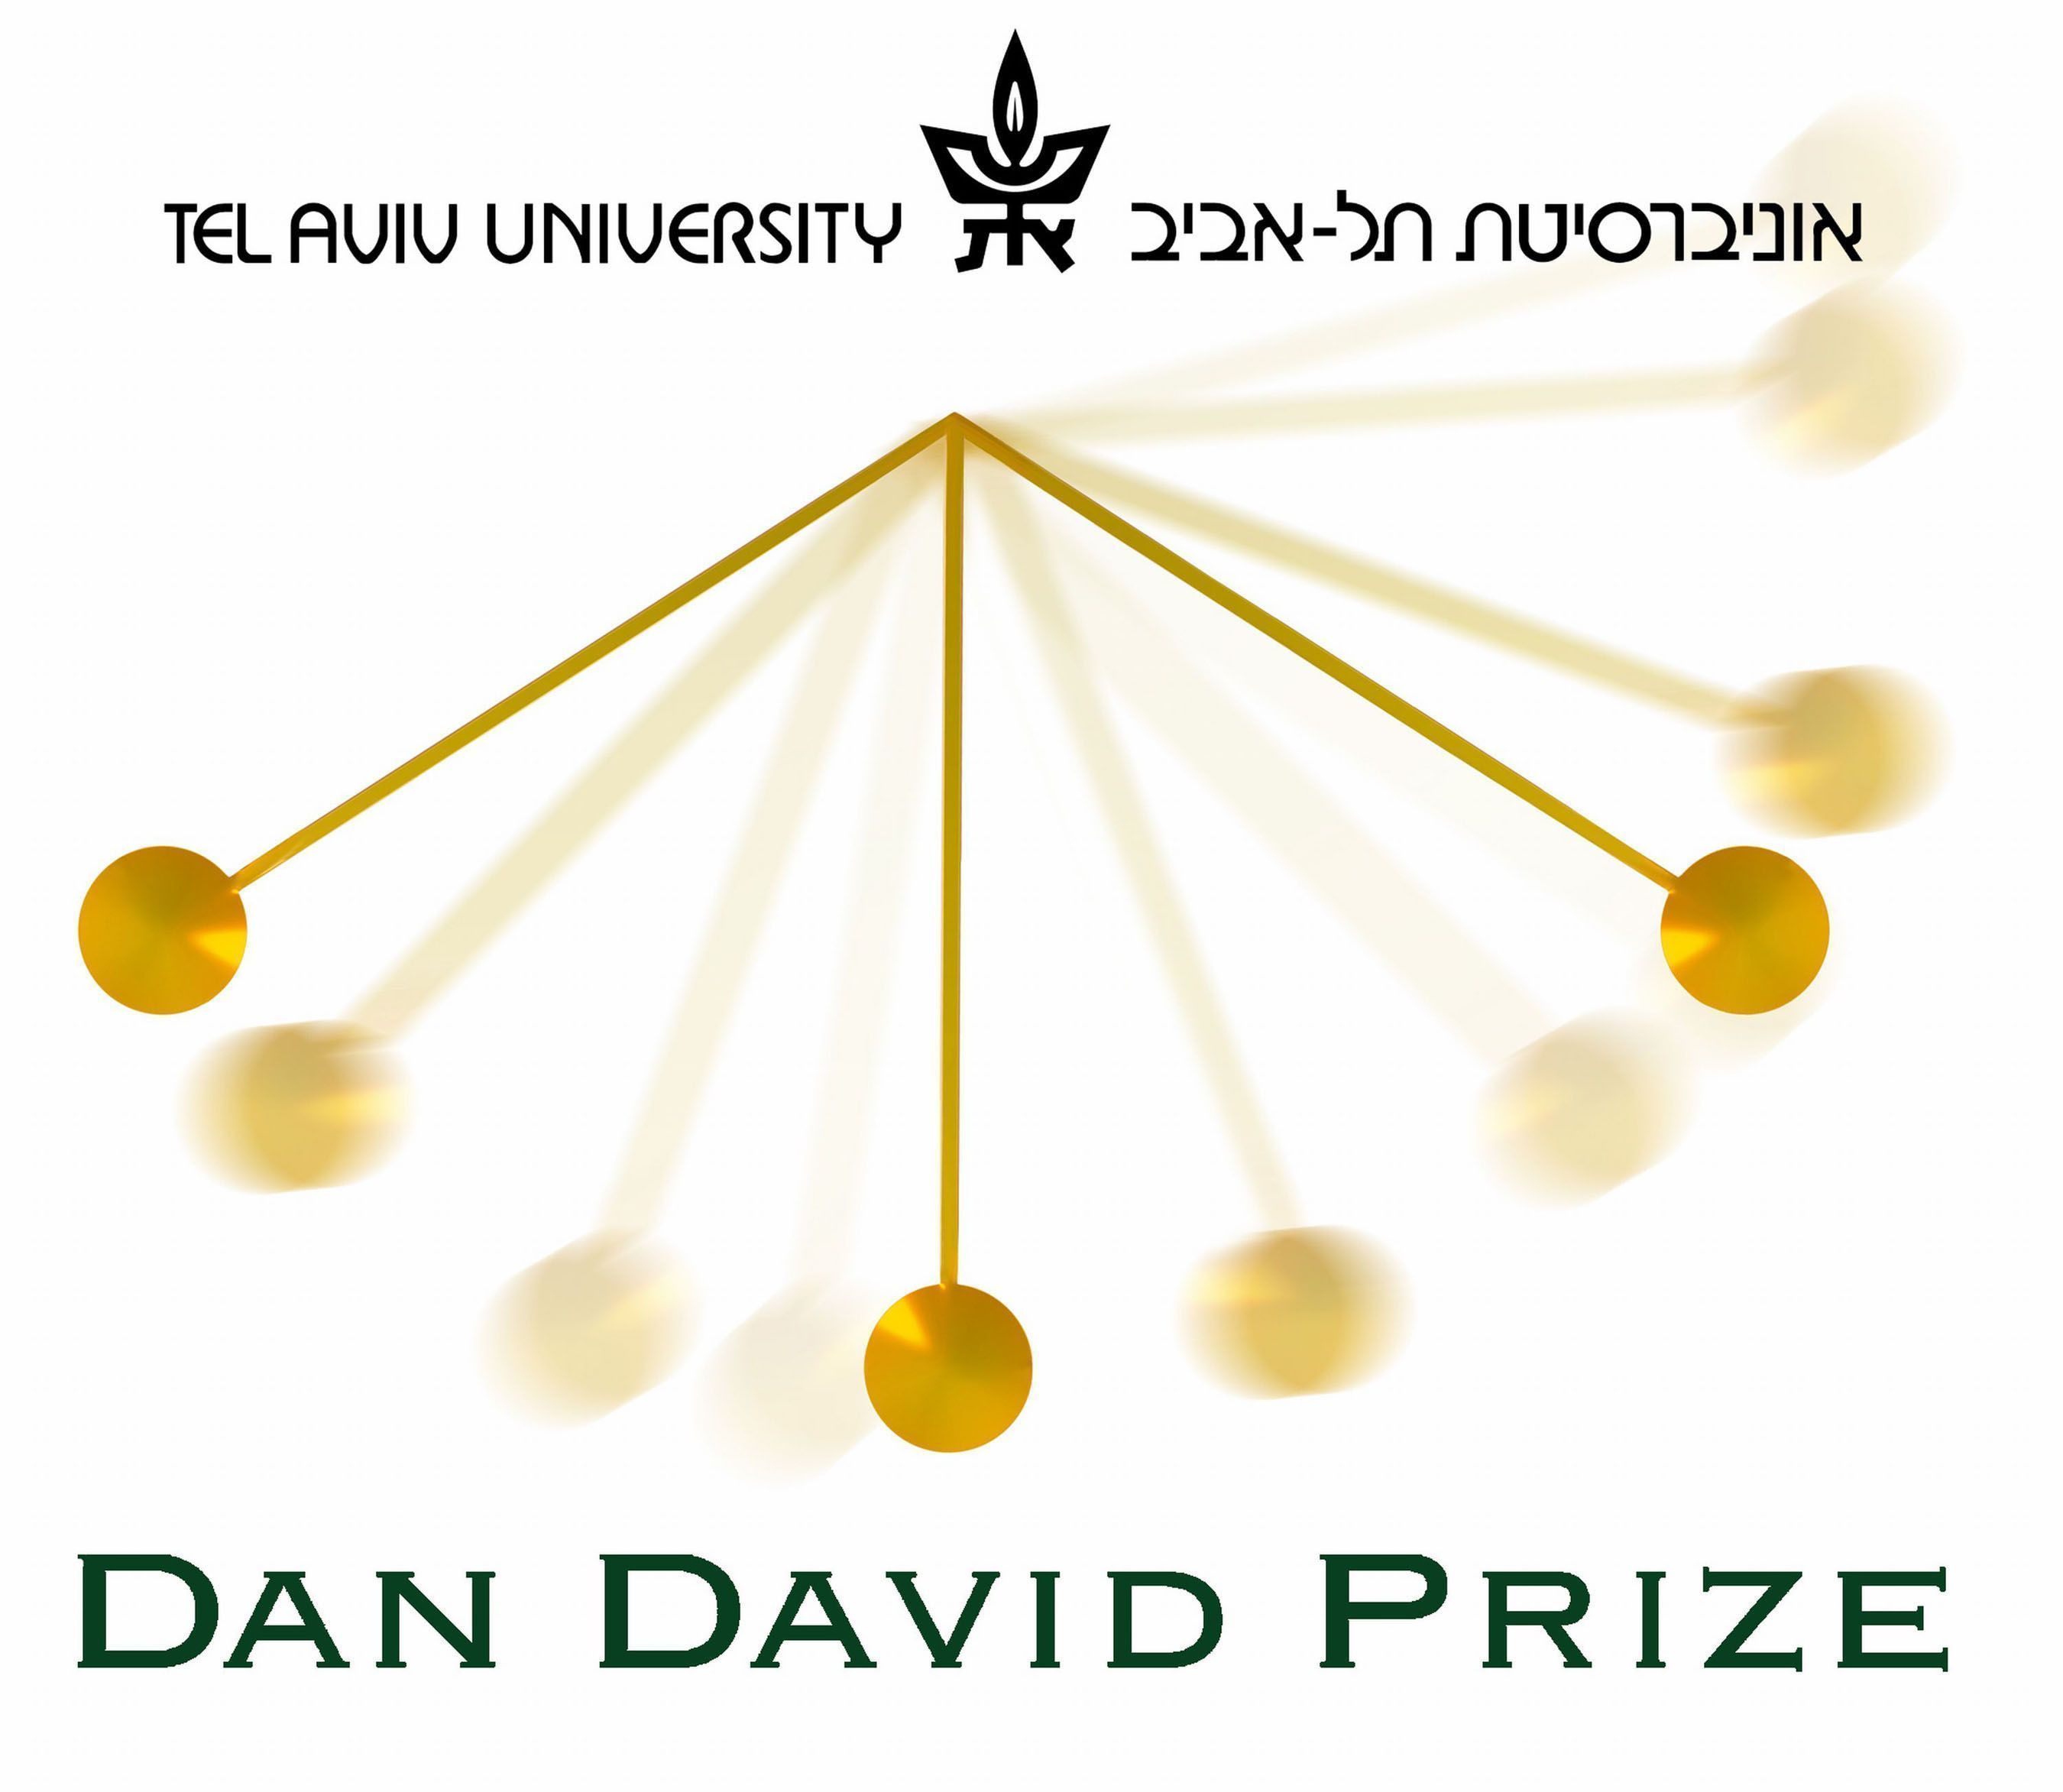 Remise des Prix Dan David 2013 ; trois récompenses d'1 million de dollars sont attribuées